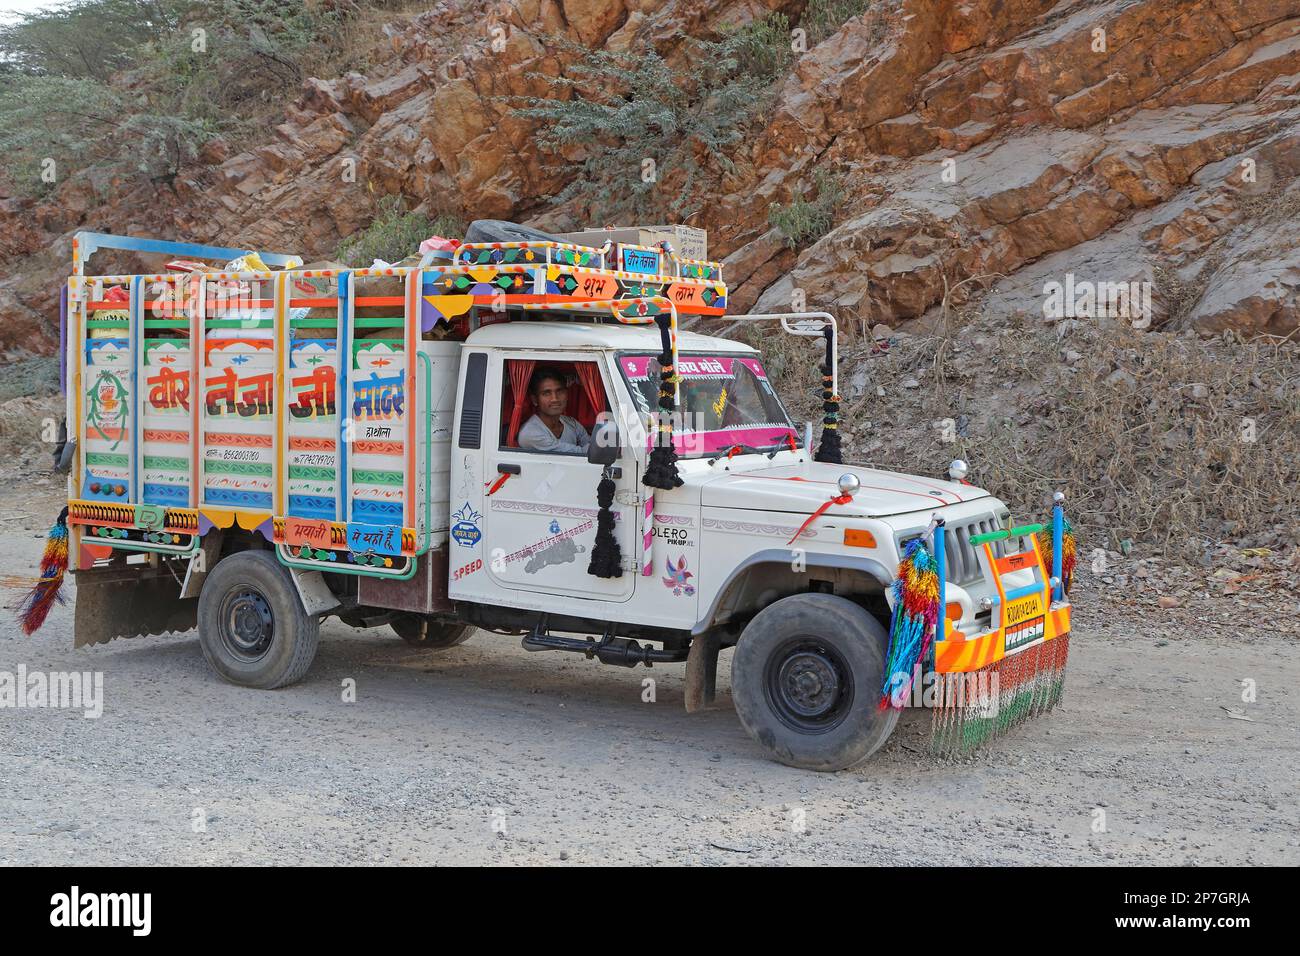 BUNDI, INDE, 7 novembre 2017 : Un camion peint et coloré conduit sur une mauvaise route du Rajasthan Banque D'Images